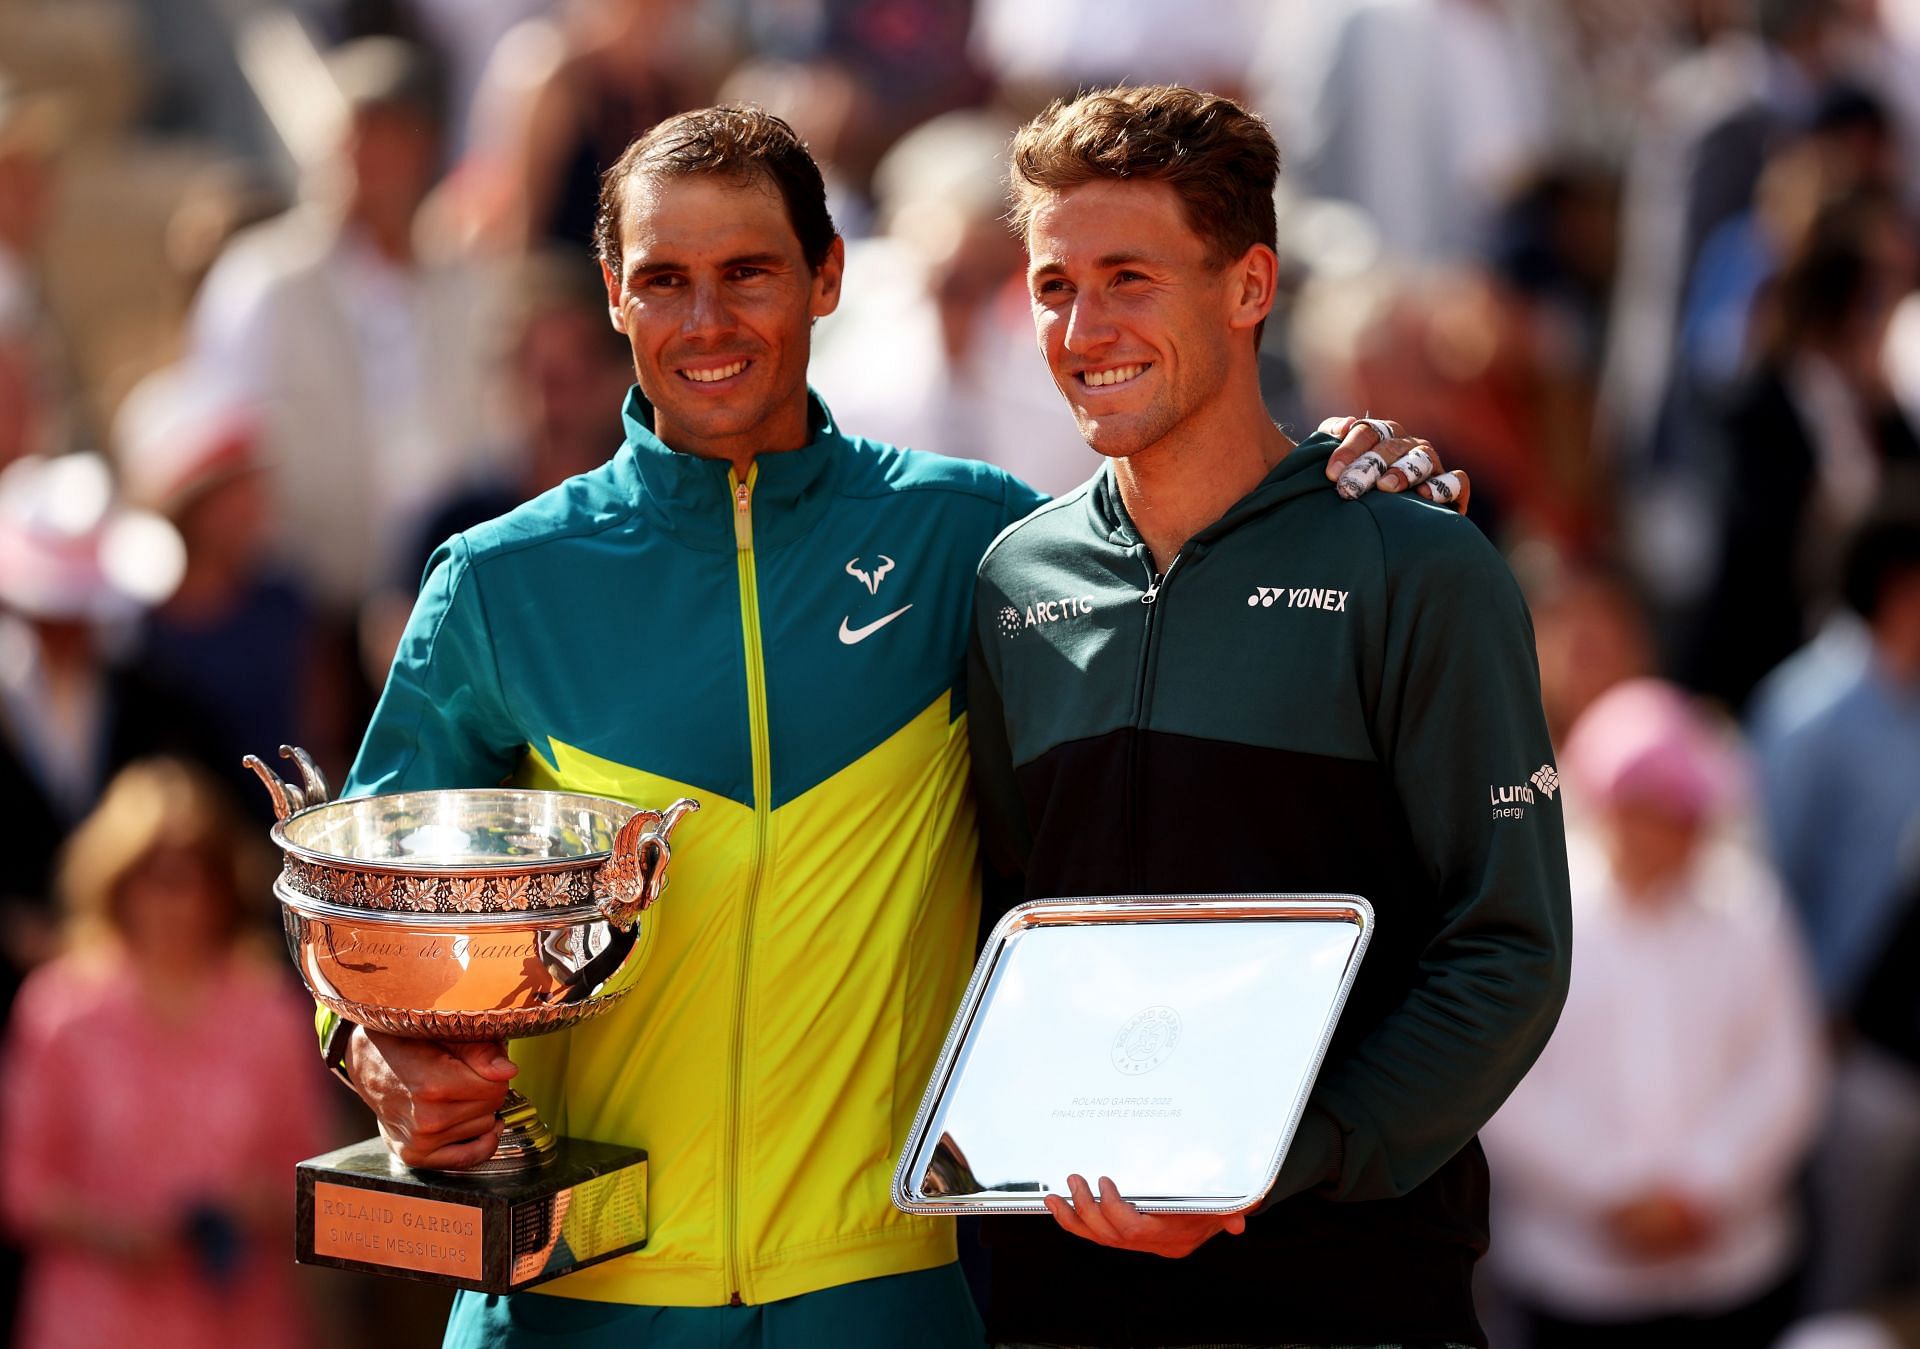 2022 French Open - Rafael Nadal and Caasper Ruud